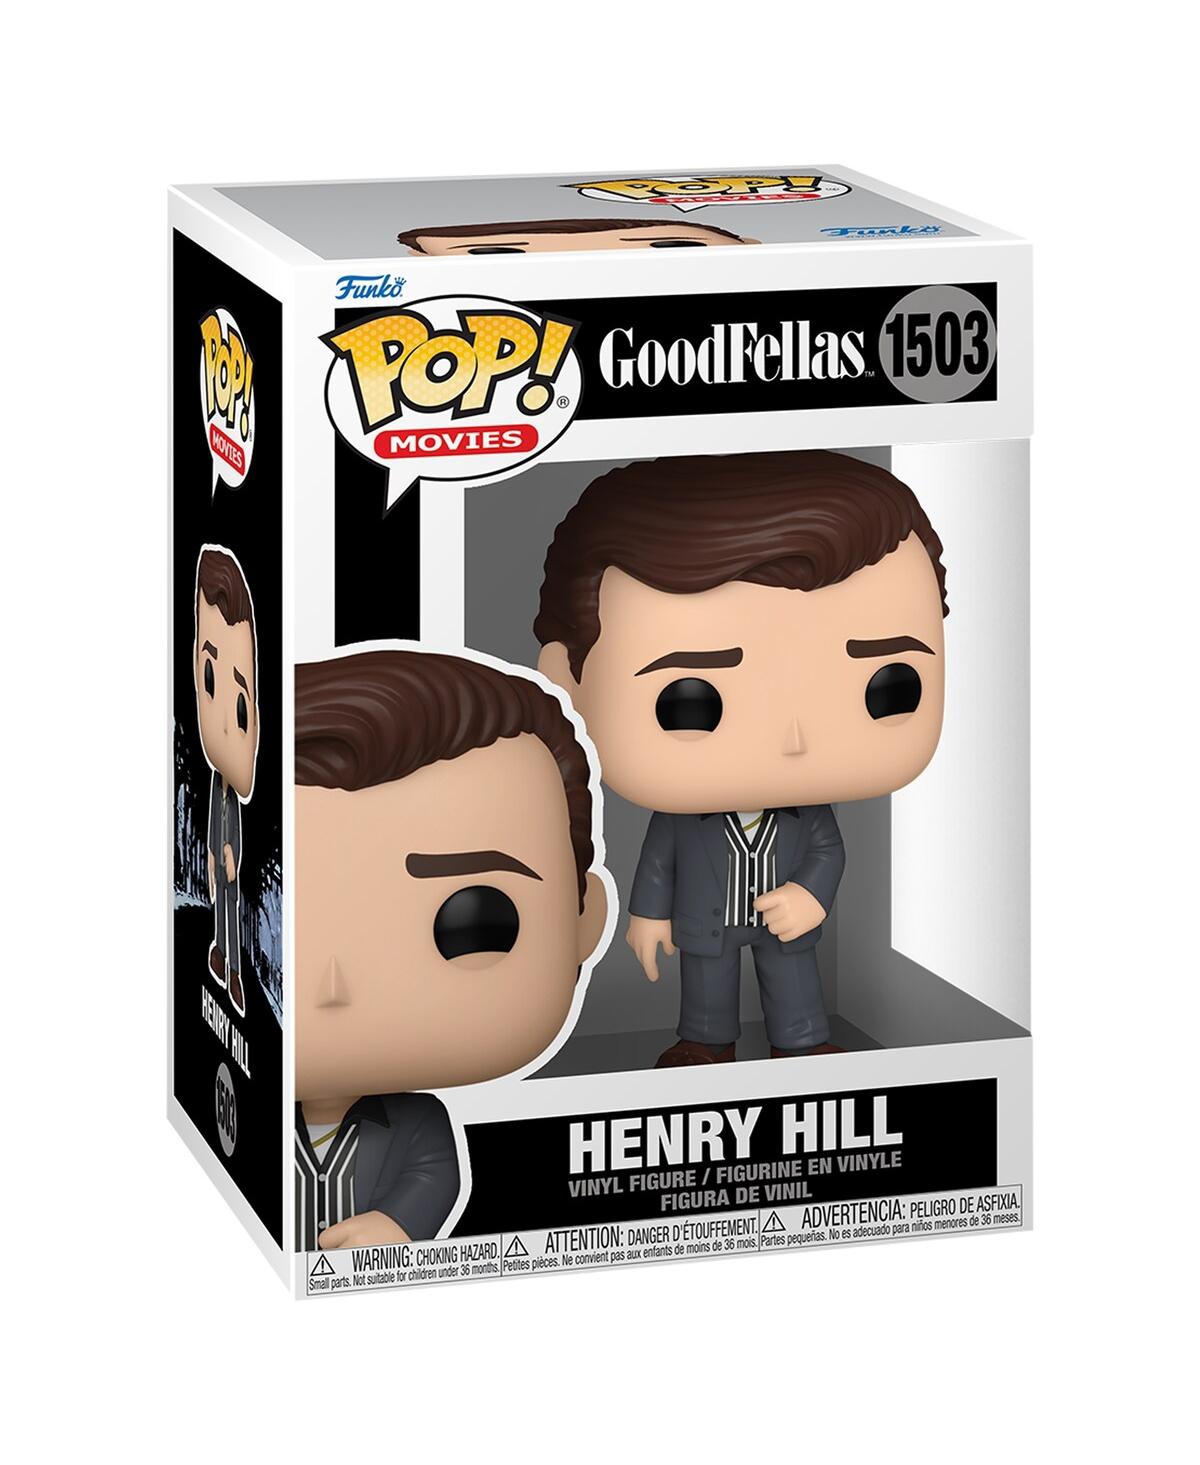 Funko Goodfellas Henry Hill Pop! Figurine In Multi